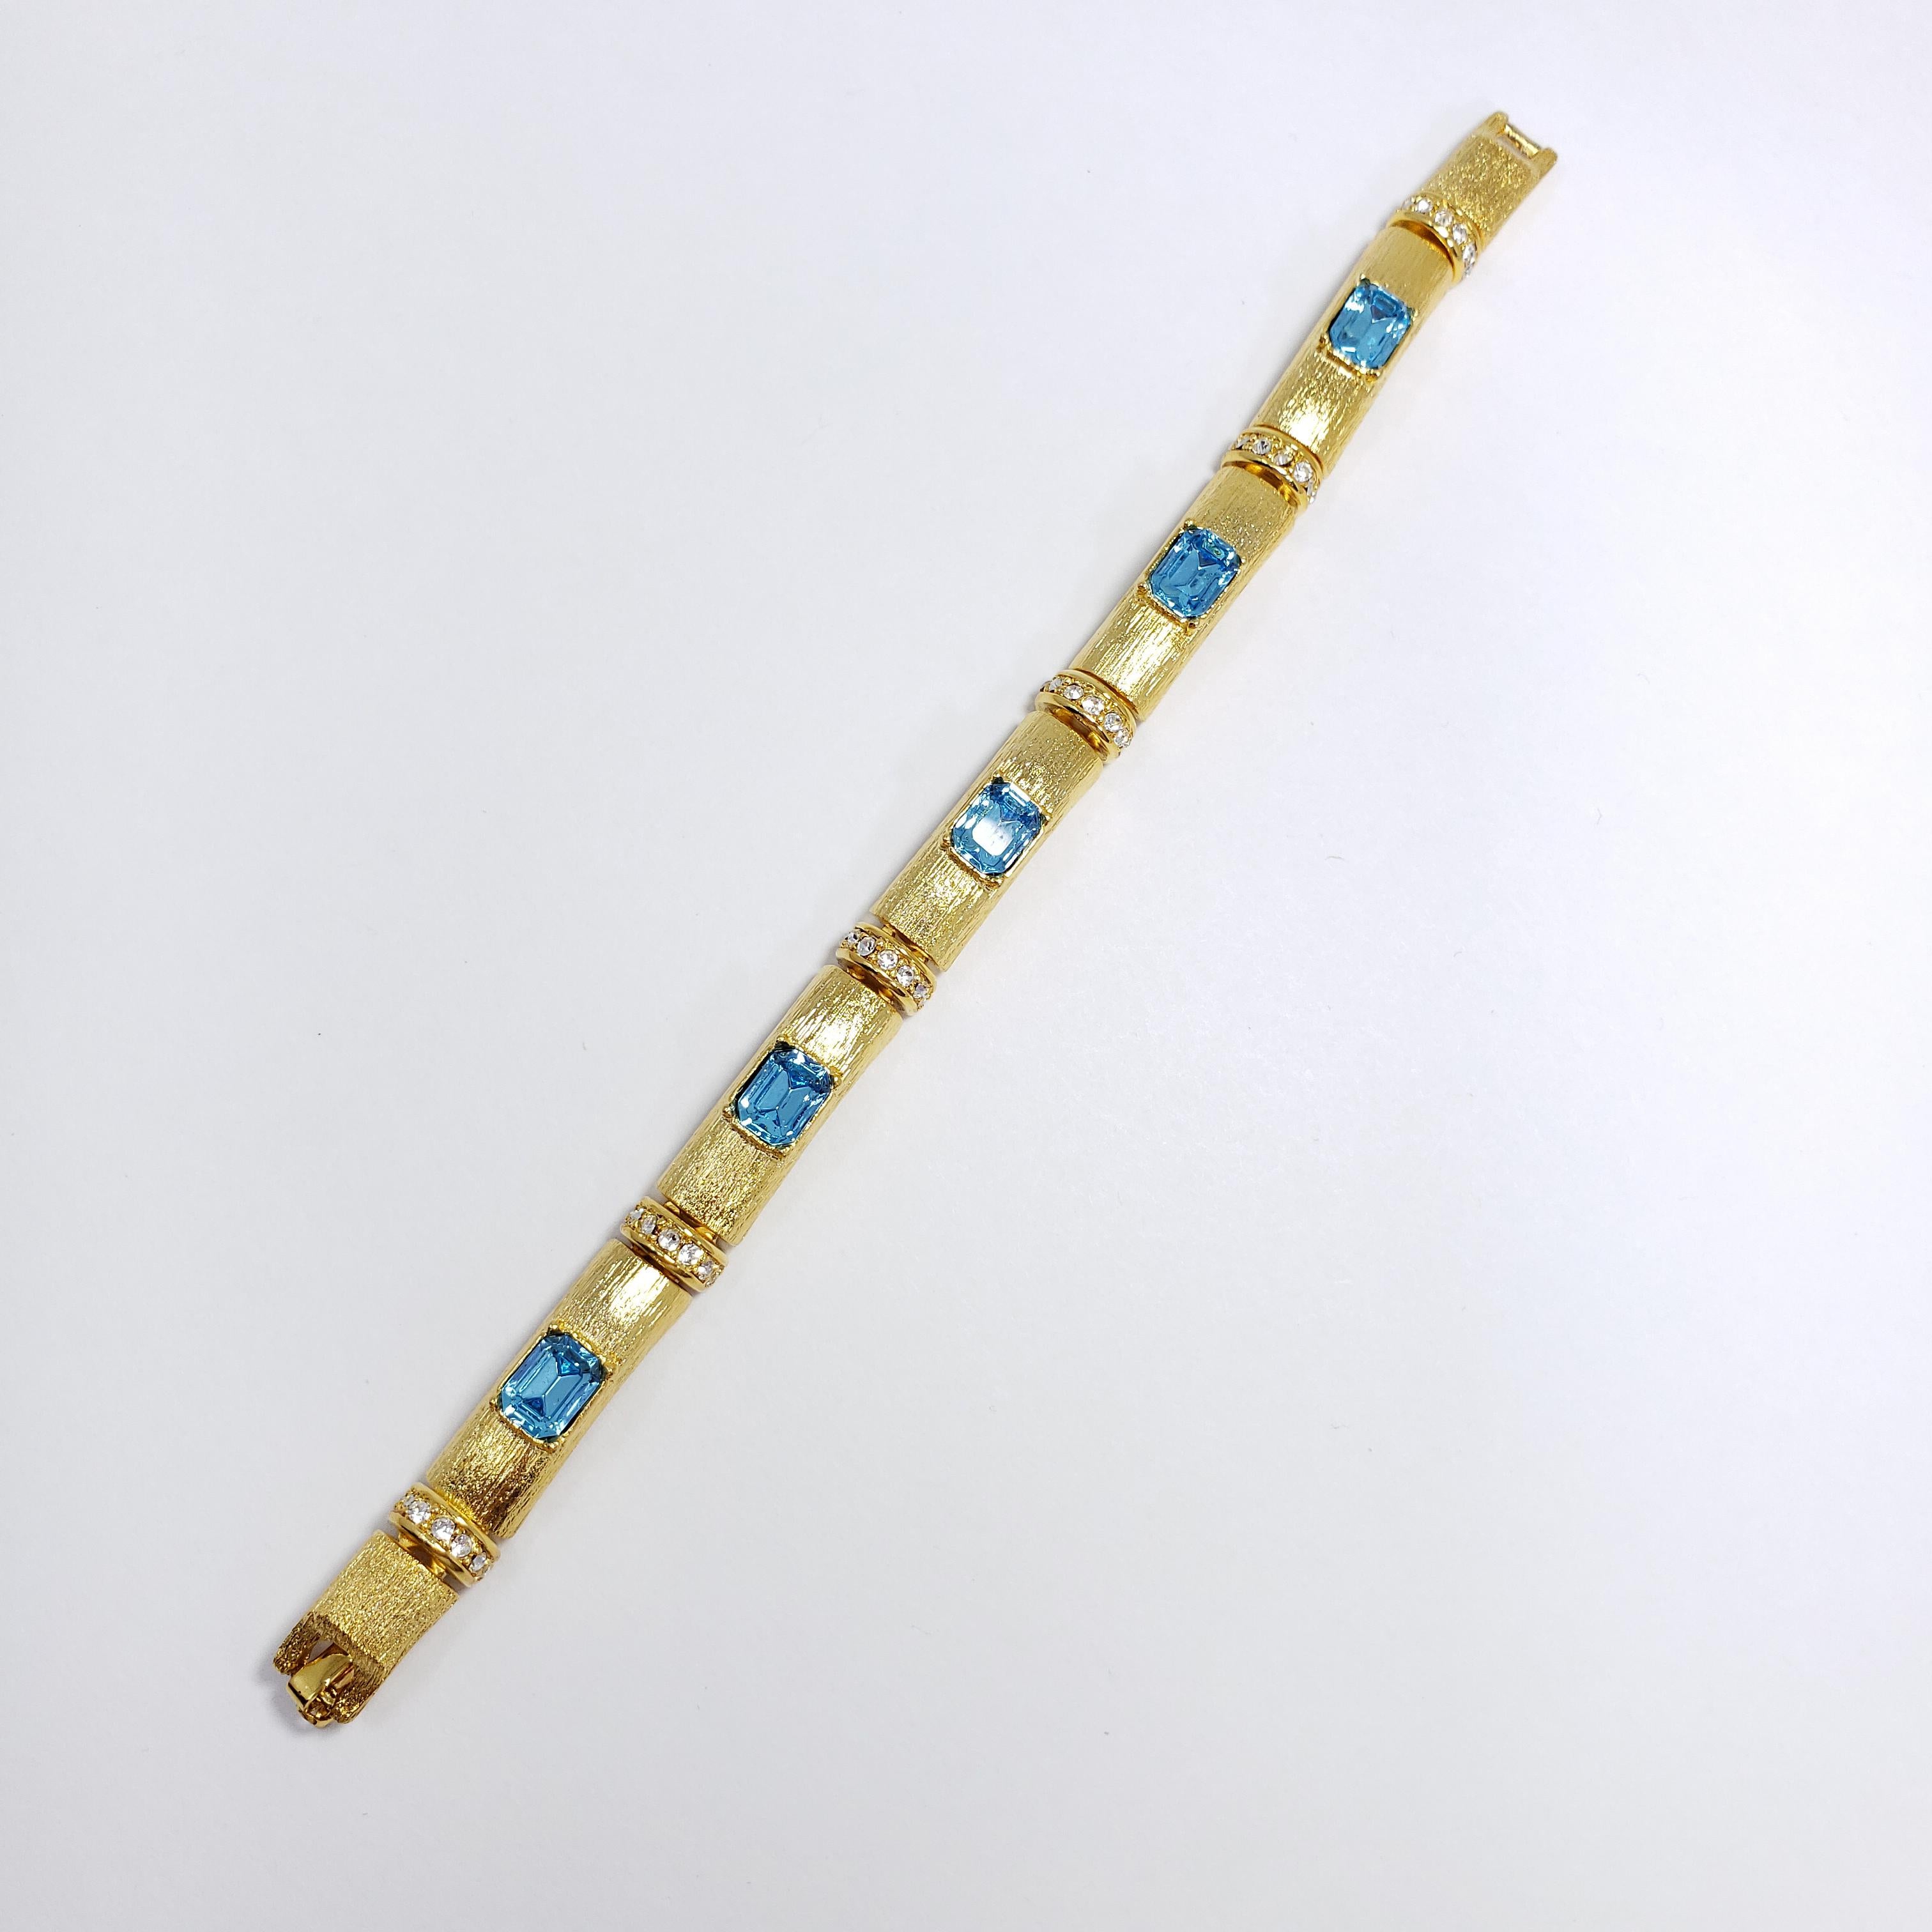 Ein stilvolles Armband von Kenneth Jay Lane in Goldton, das aus miteinander verbundenen, strukturierten Segmenten besteht, die mit klaren und blauen Kristallen verziert sind.

Markenzeichen: Kenneth Jay Lane